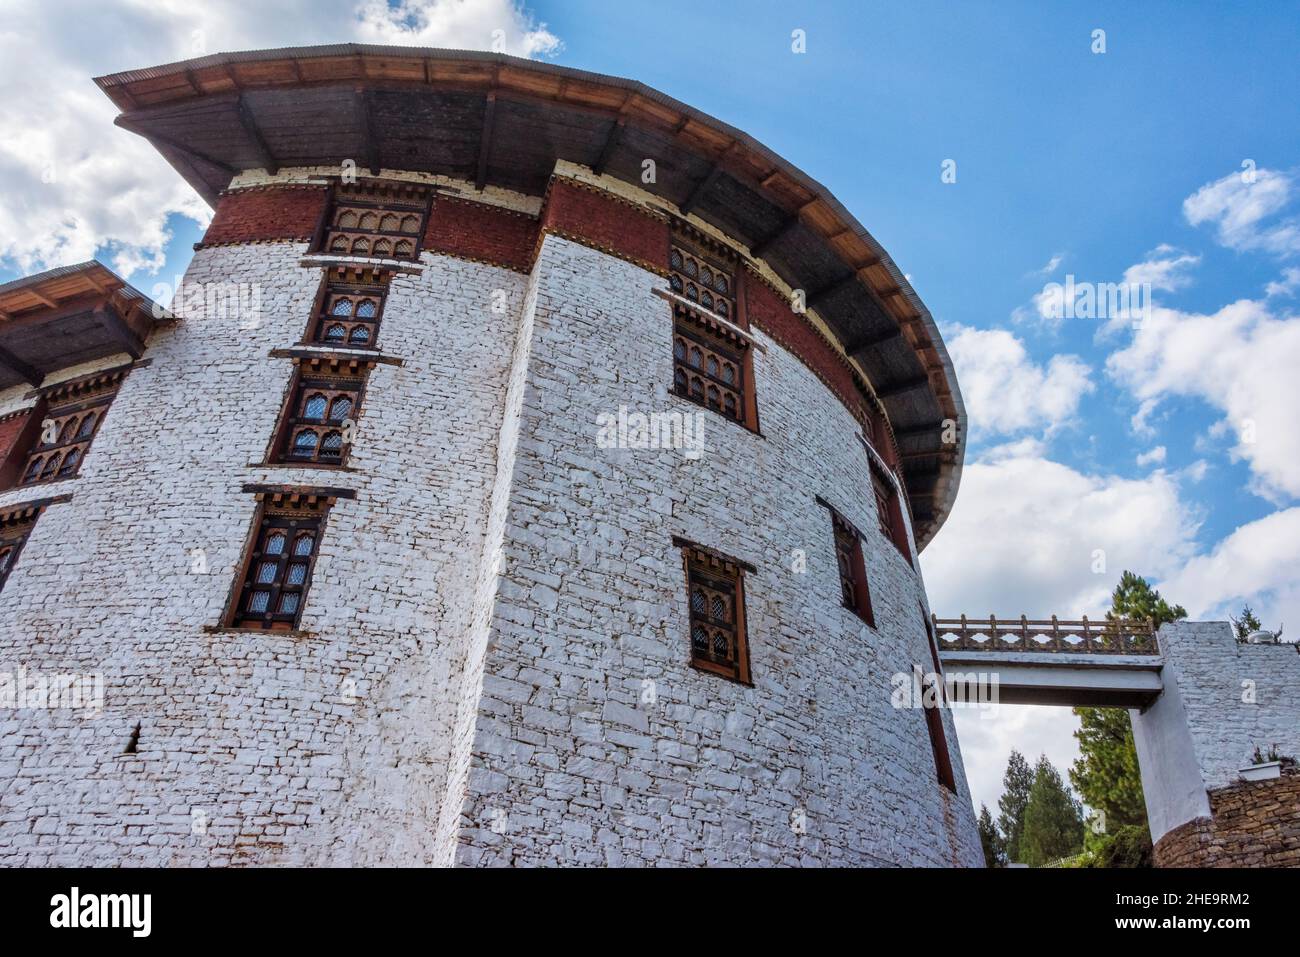 National Museum, Paro, Bhutan Stock Photo